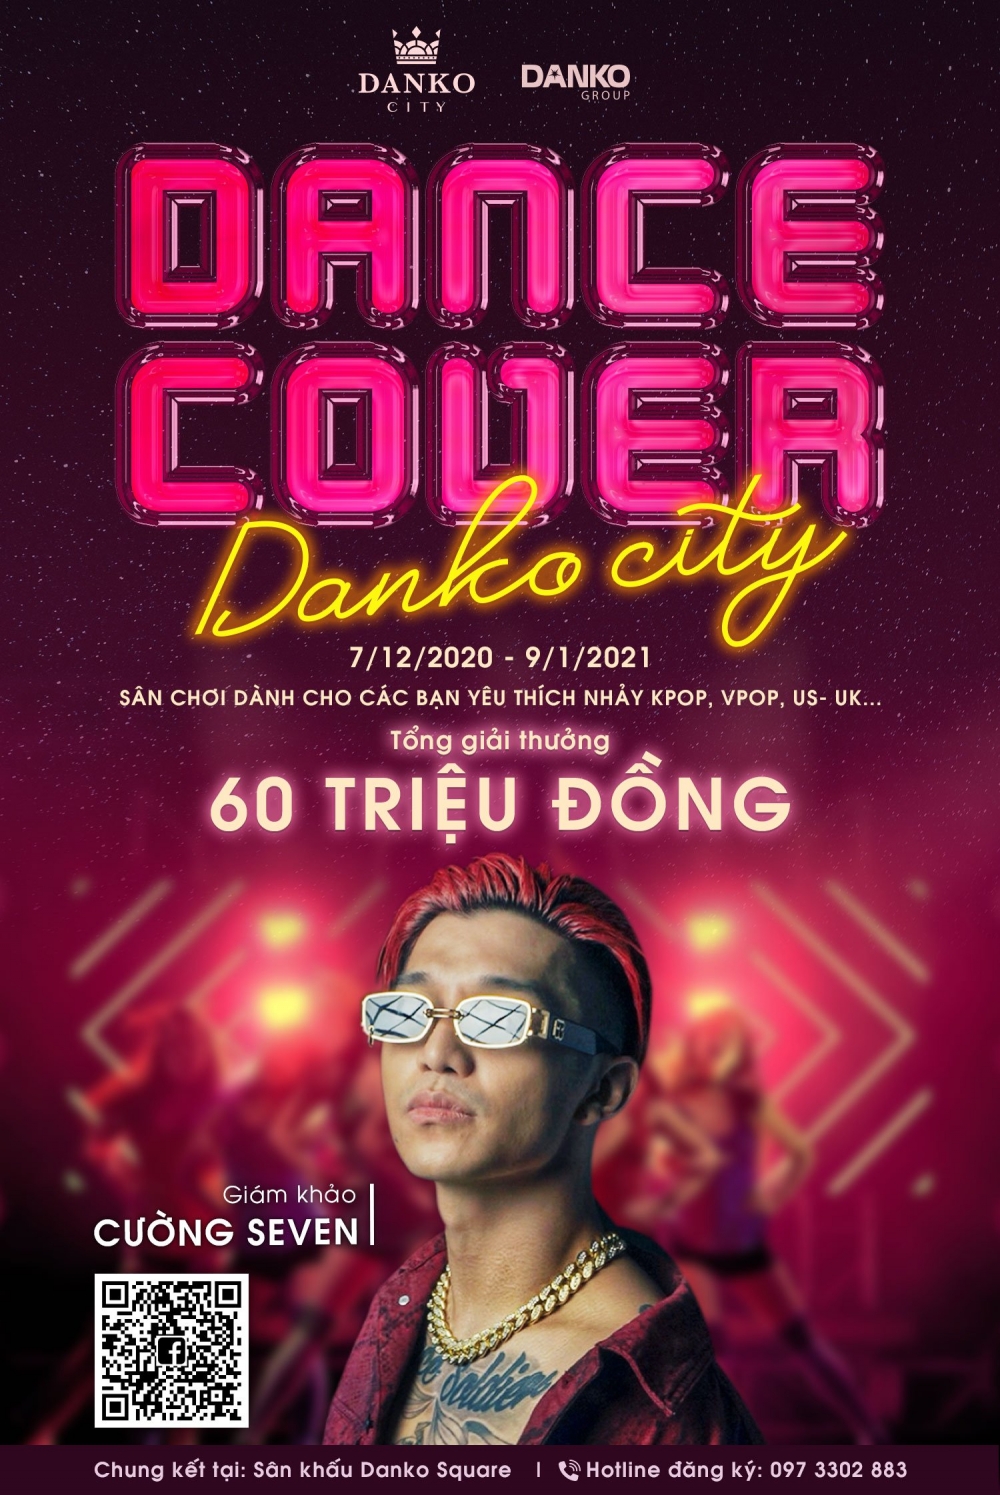 Thỏa sức thể hiện đam mê với cuộc thi nhảy Dance Cover Danko City